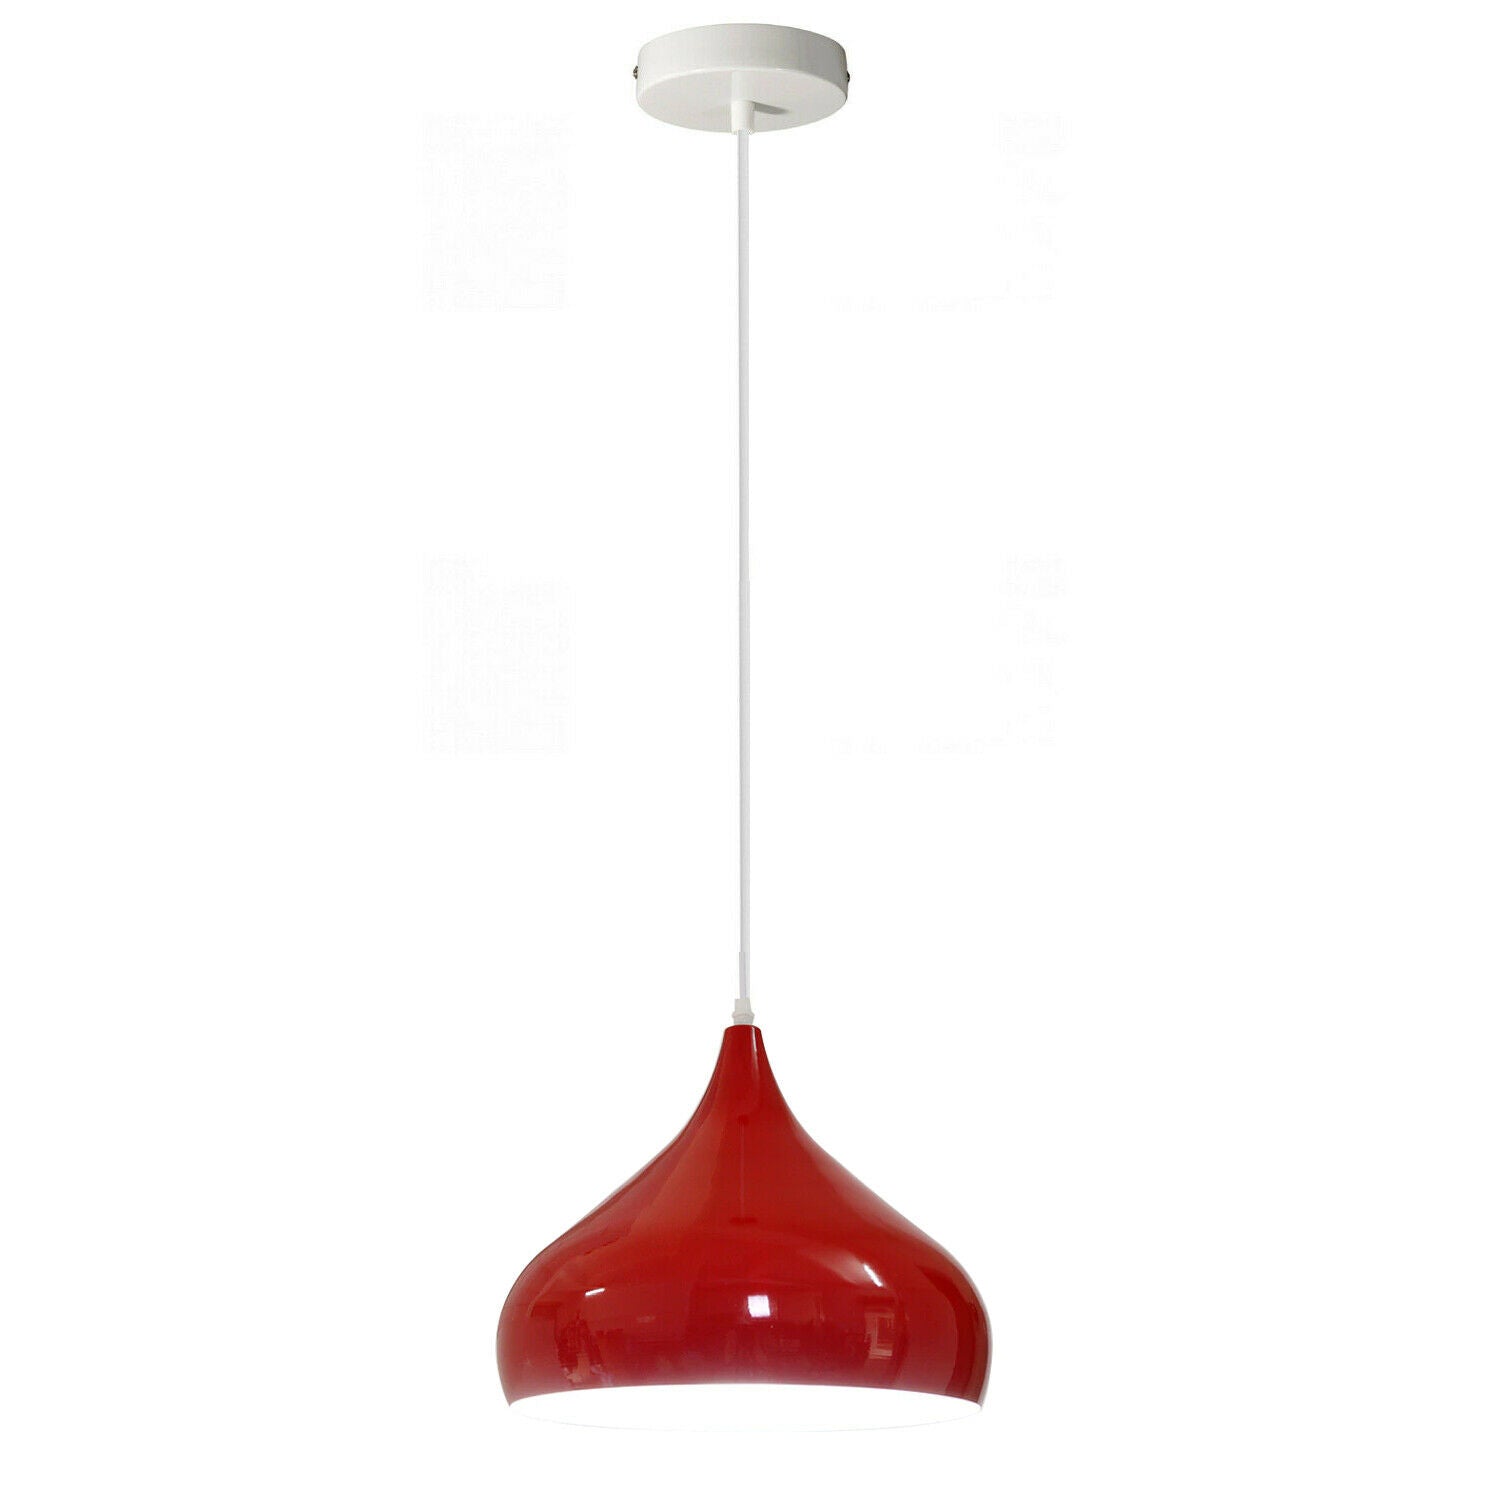 Vintage Industrial Metal Ceiling Red Hanging Pendant Shade~2504 - LEDSone UK Ltd